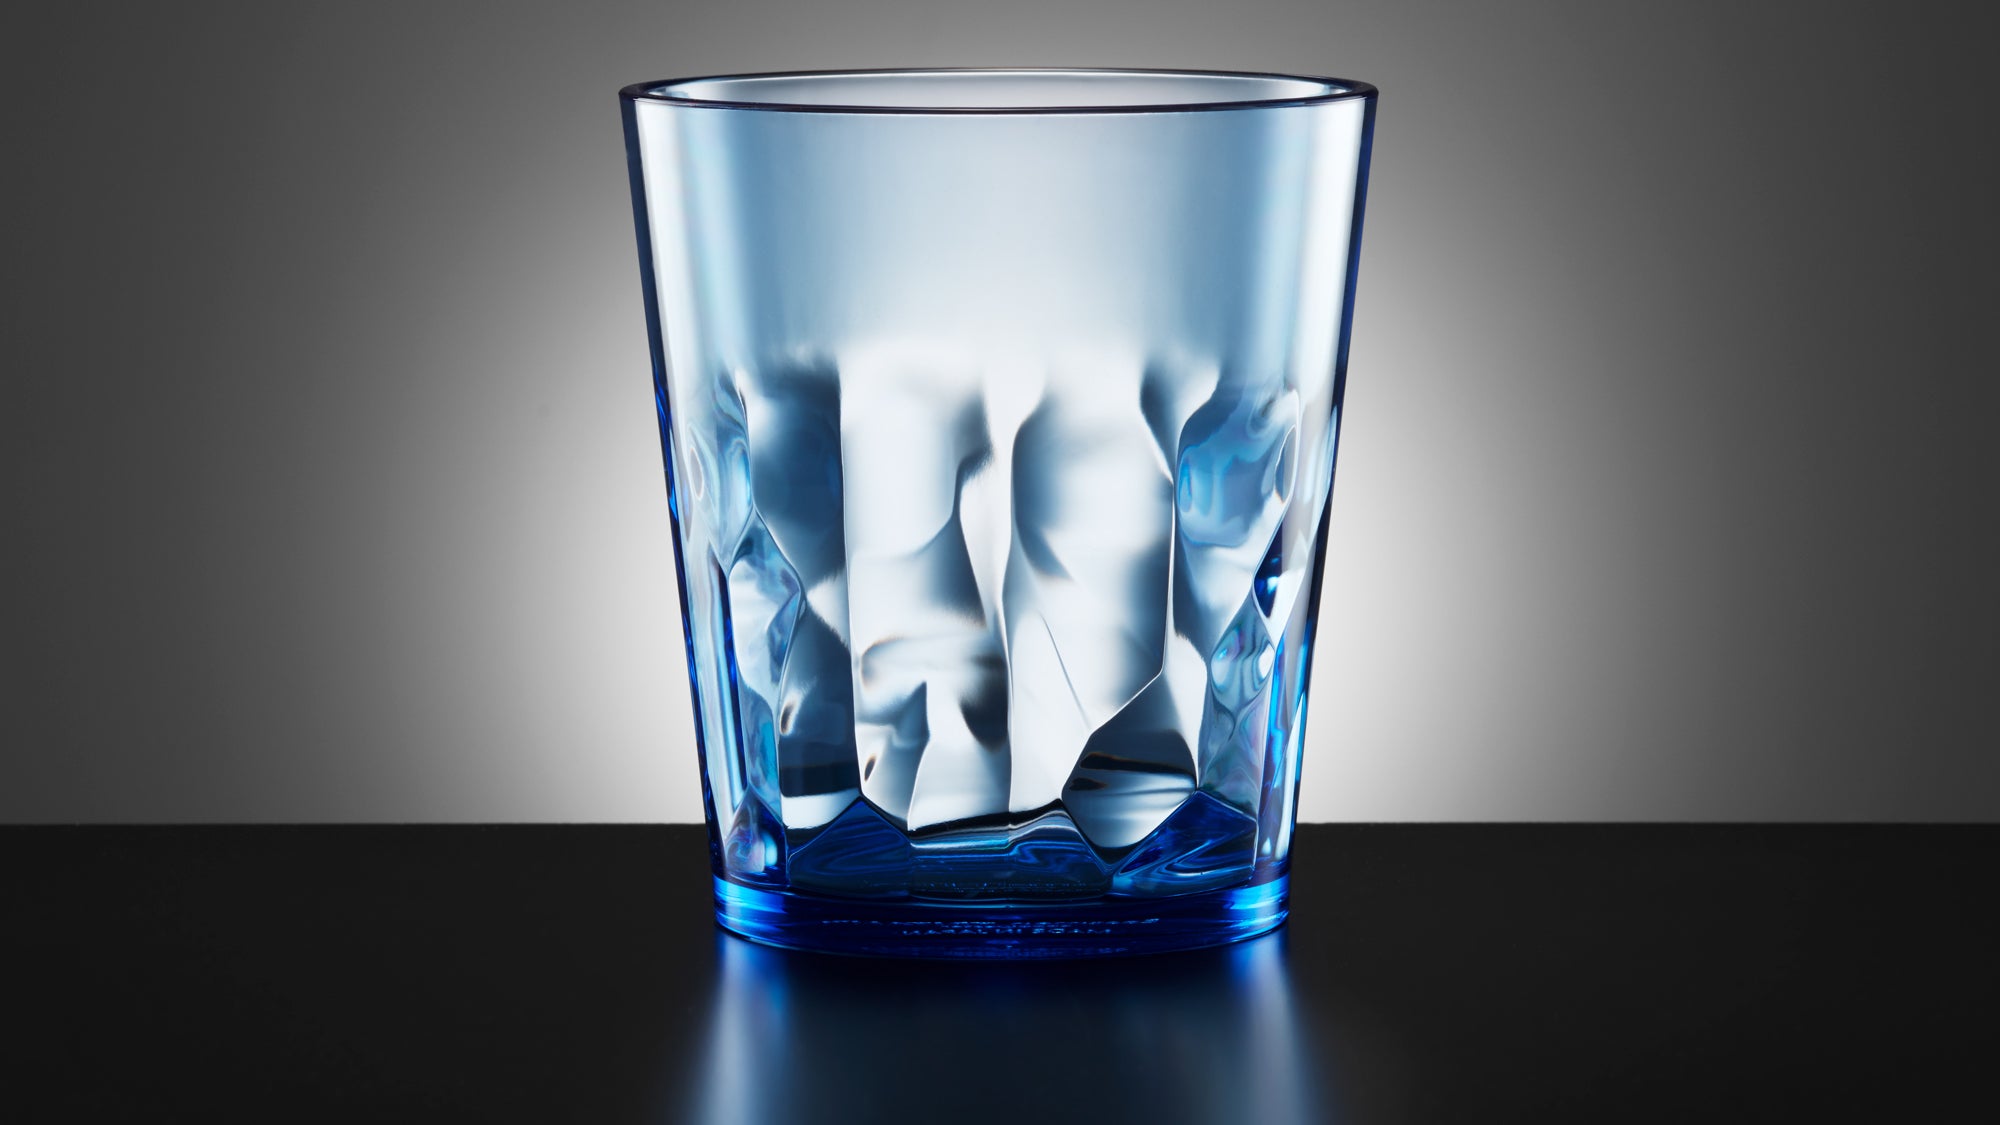 8 oz Unbreakable Premium Juice Glasses - Set of 4 - Tritan Plastic